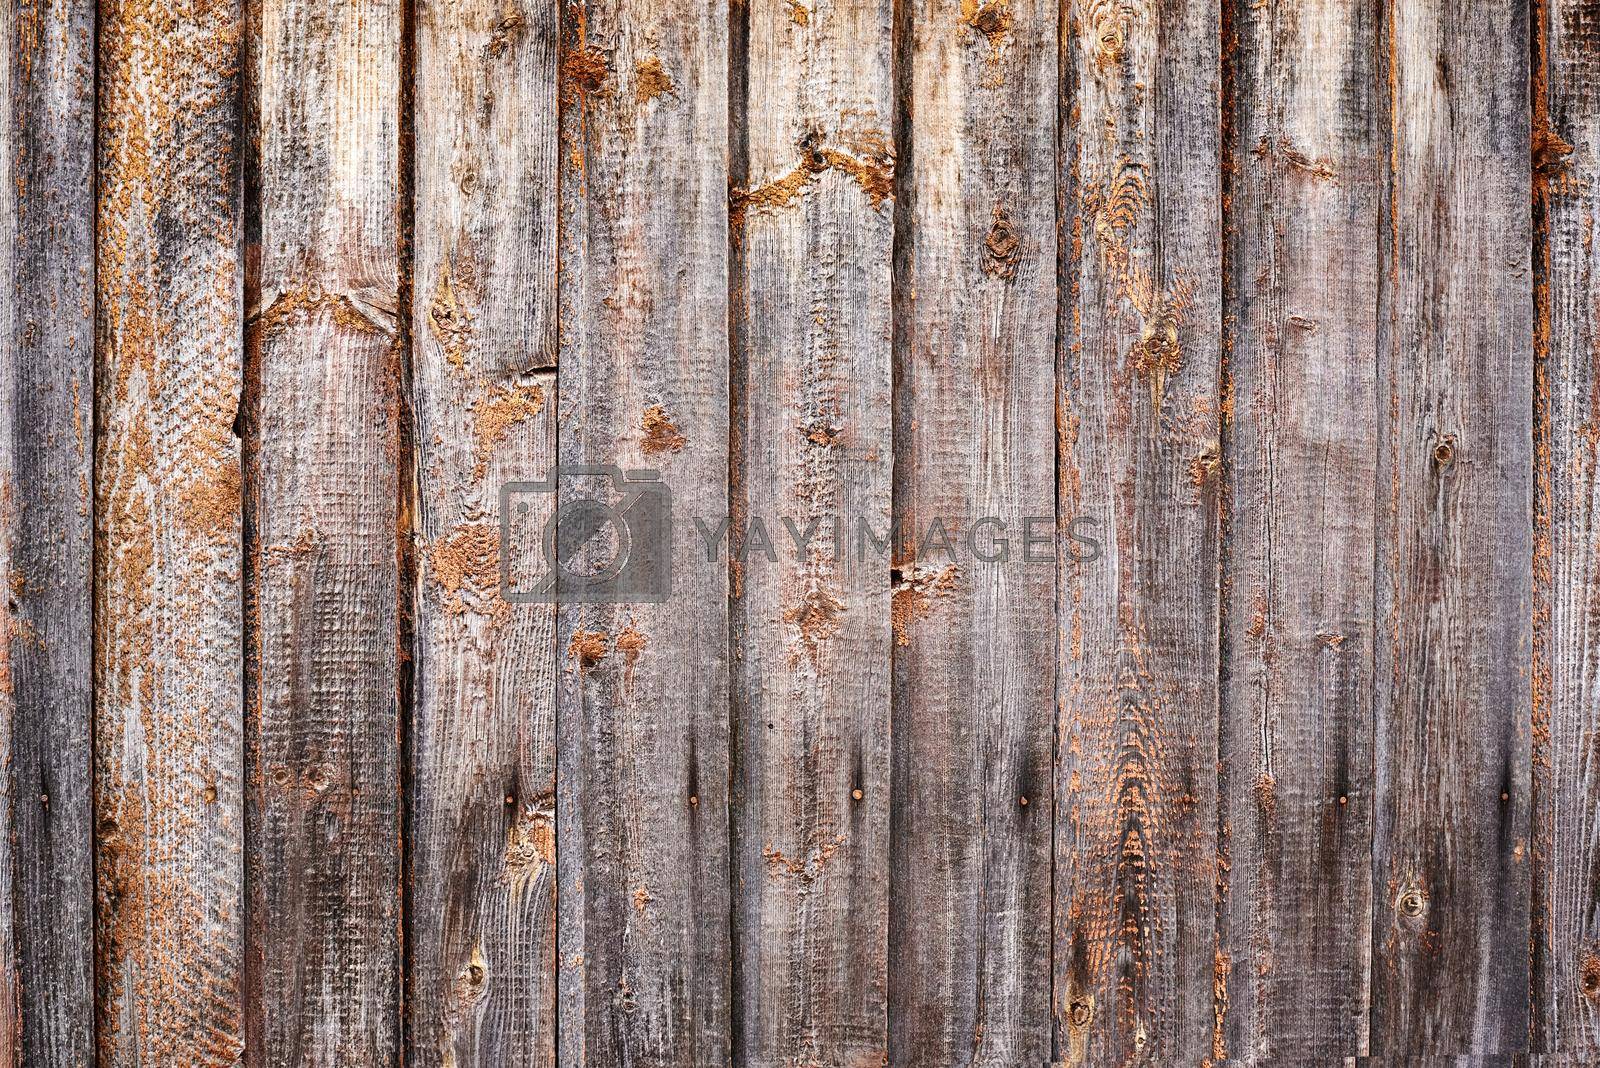 Old wood texture. Dark grunge wooden planks background